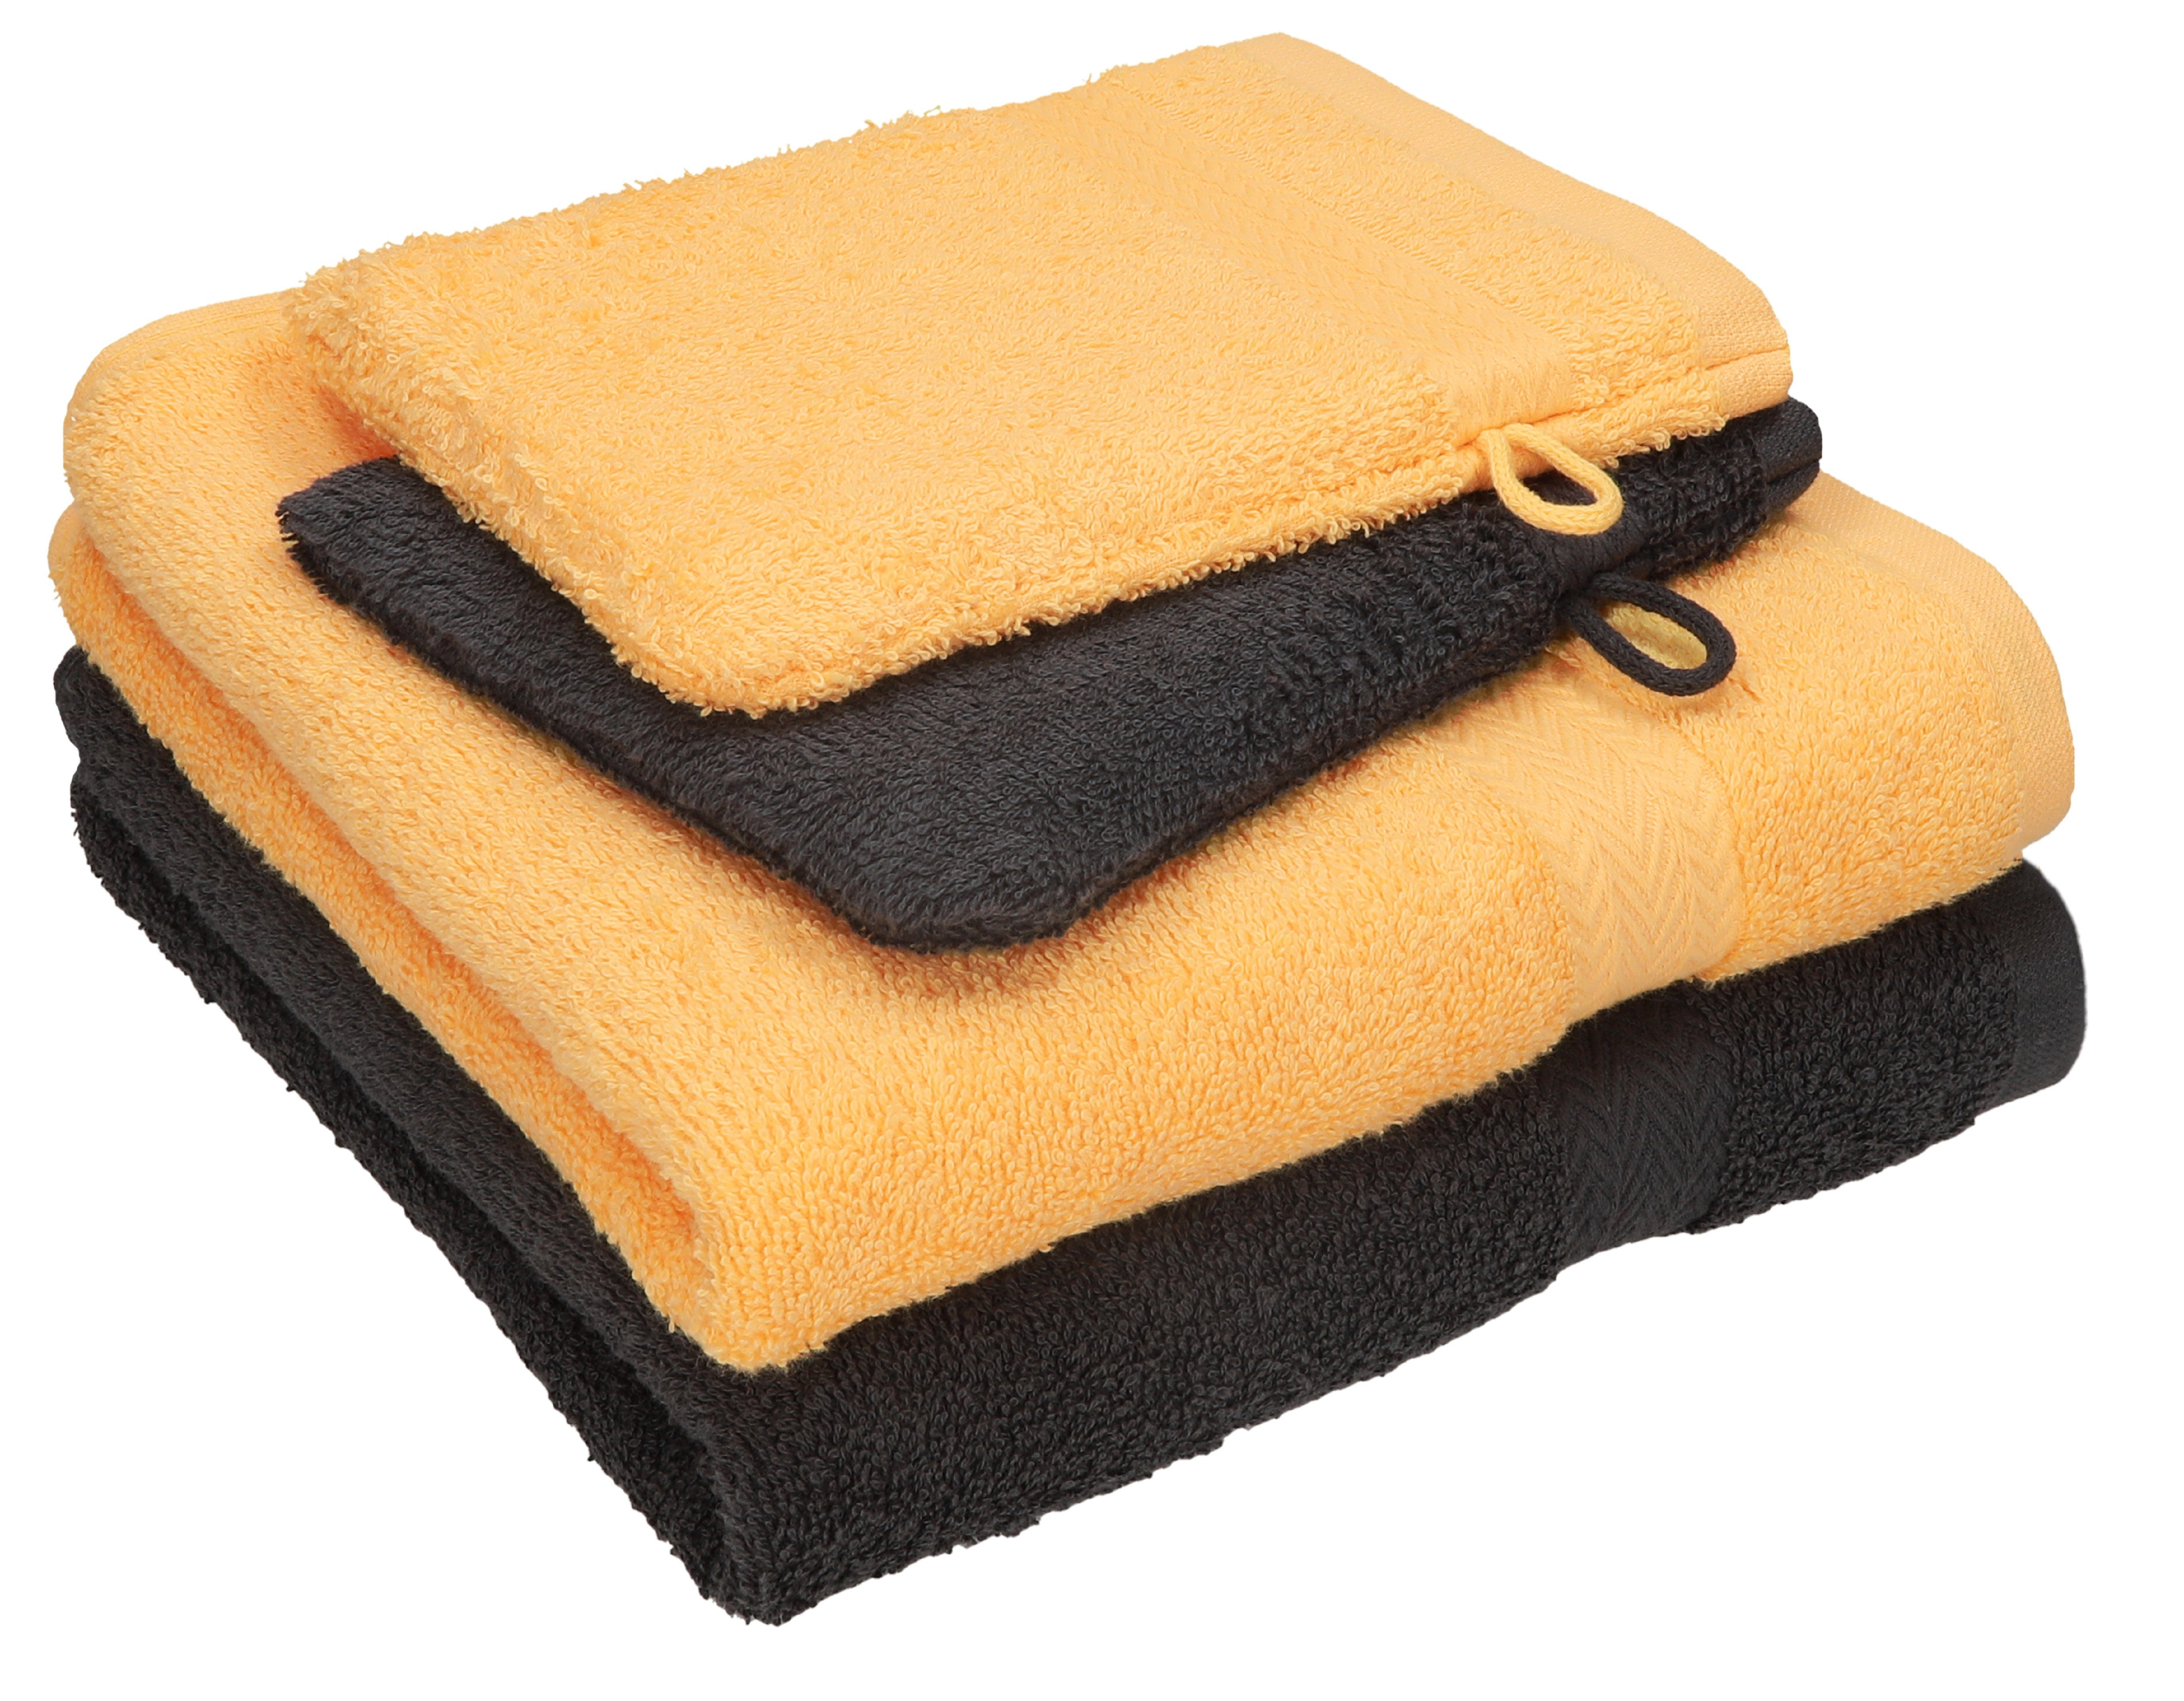 Betz Handtuch Set 4 tlg. Handtuch Set HAPPY Pack 100% Baumwolle 2 Handtücher 2 Waschhandschuhe, 100% Baumwolle graphit grau - honiggelb